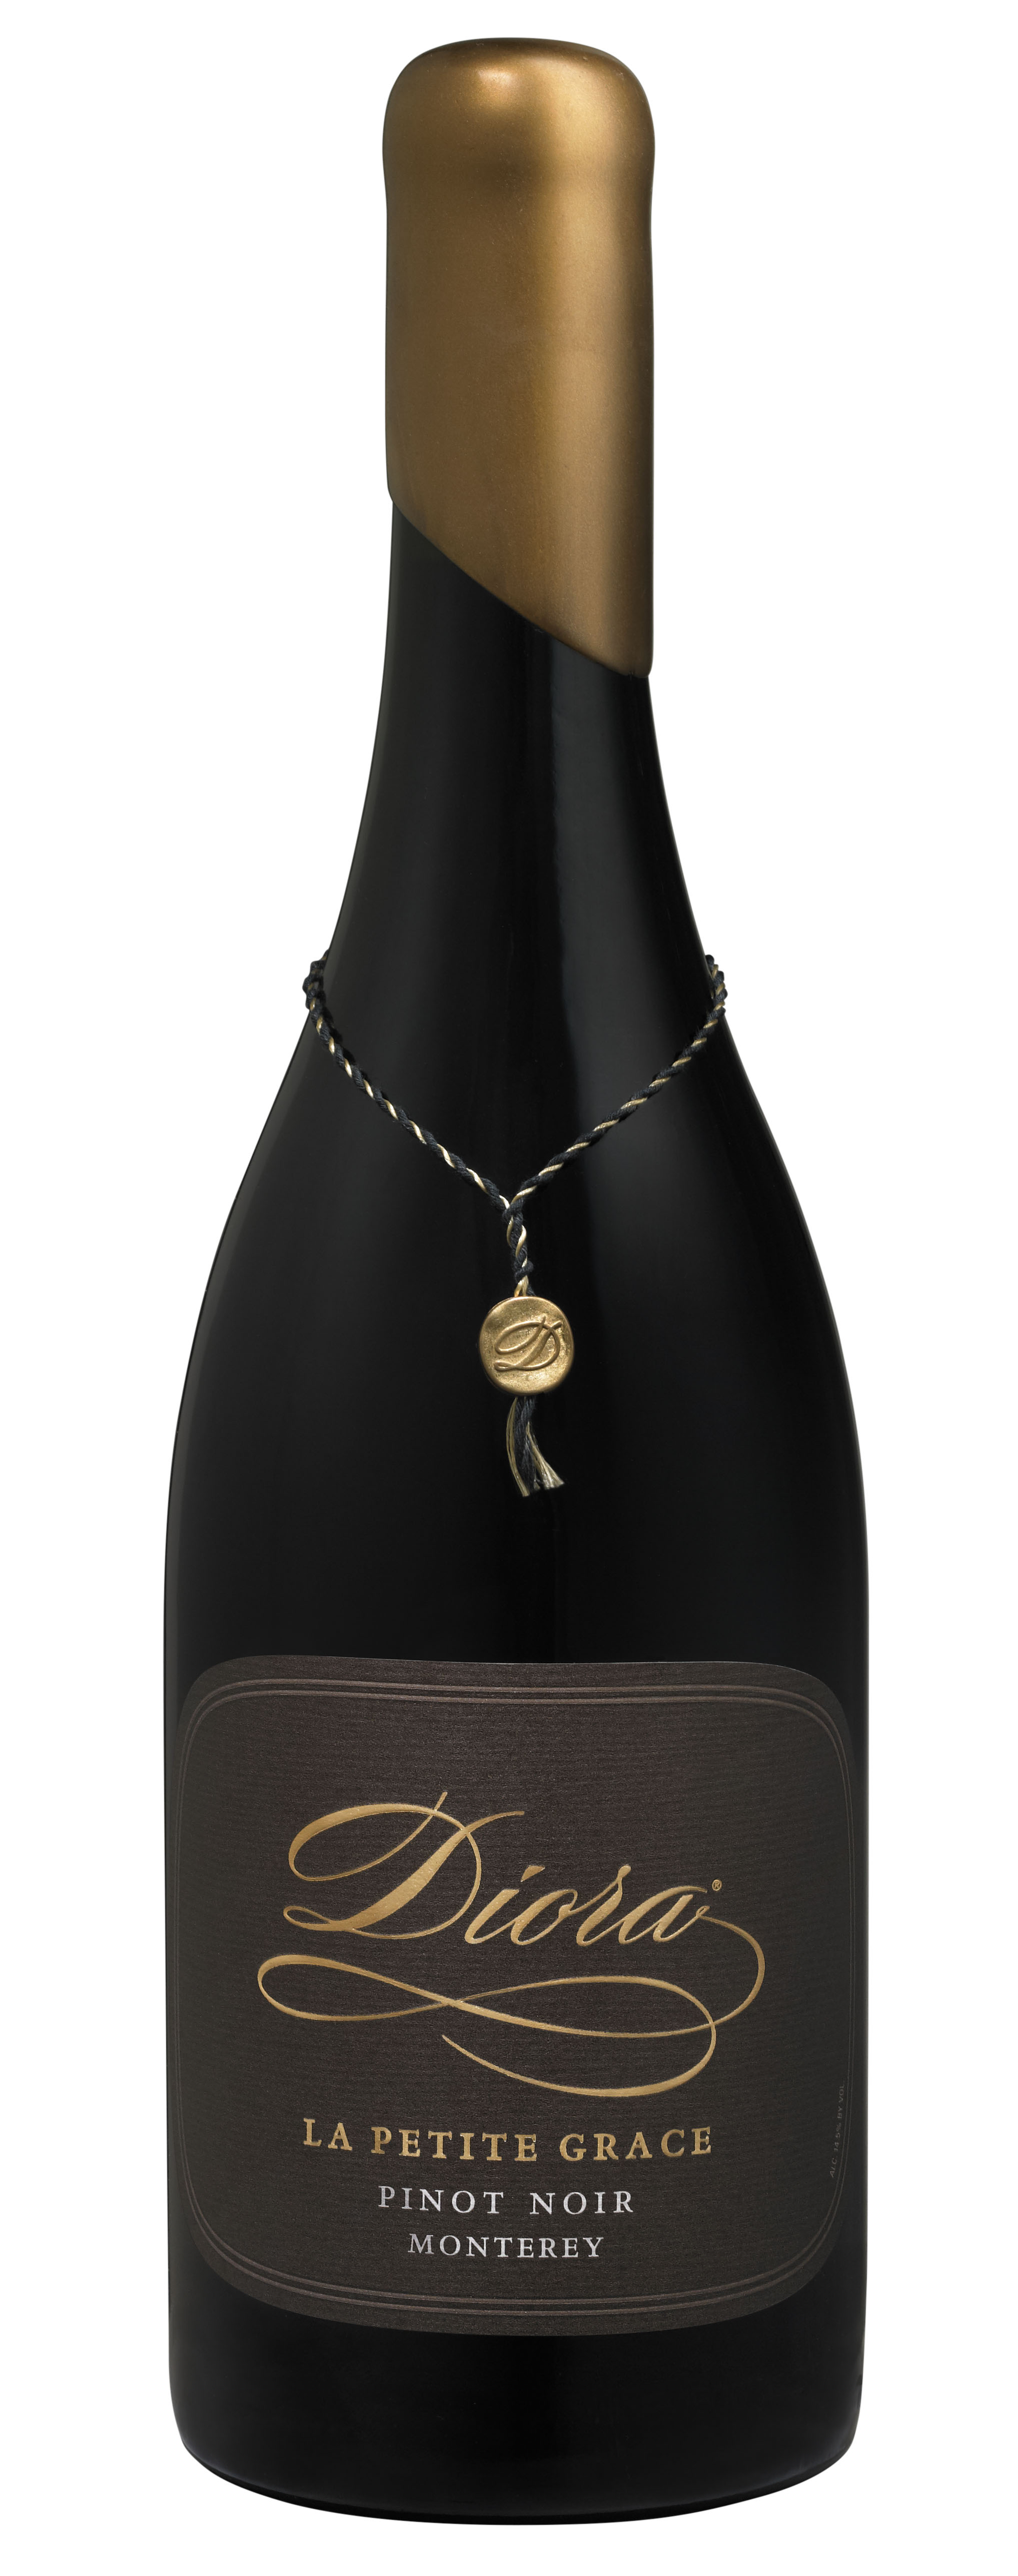 Product Image for 2018 Diora La Petite Grace Pinot Noir